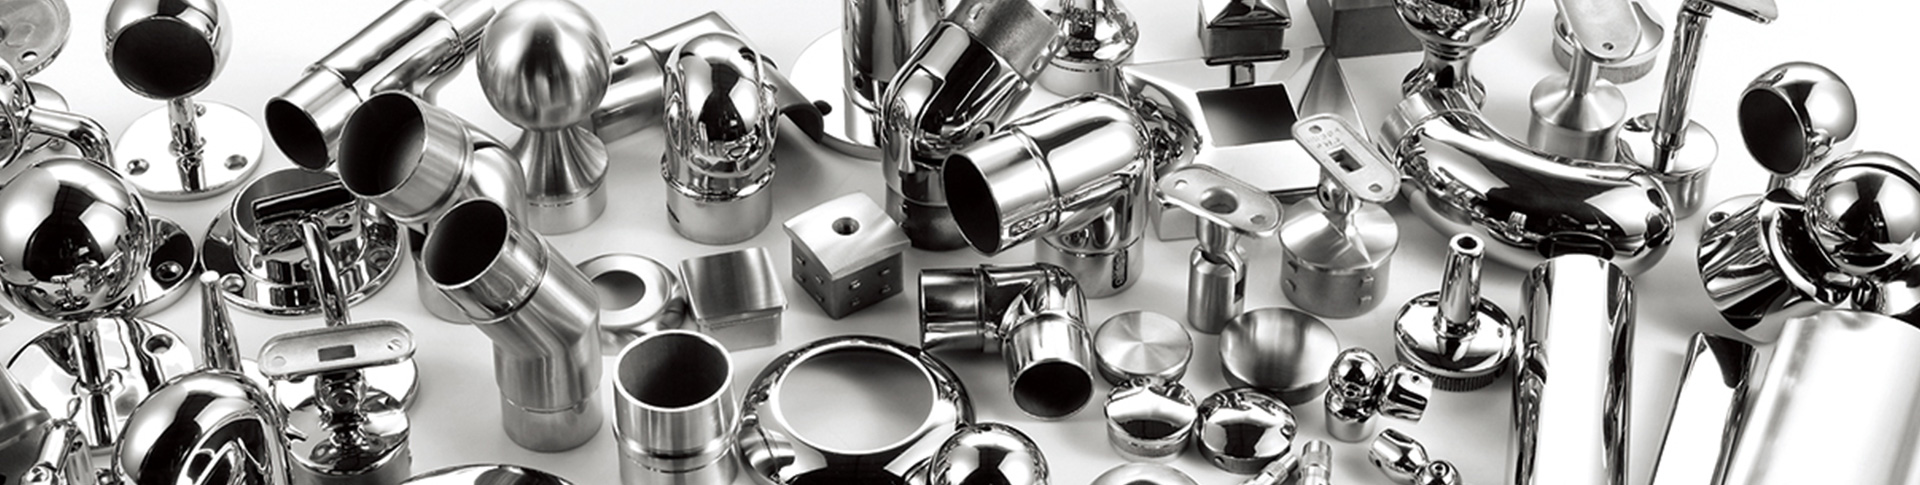 Muchos tipos diferentes de accesorios de acero inoxidable.